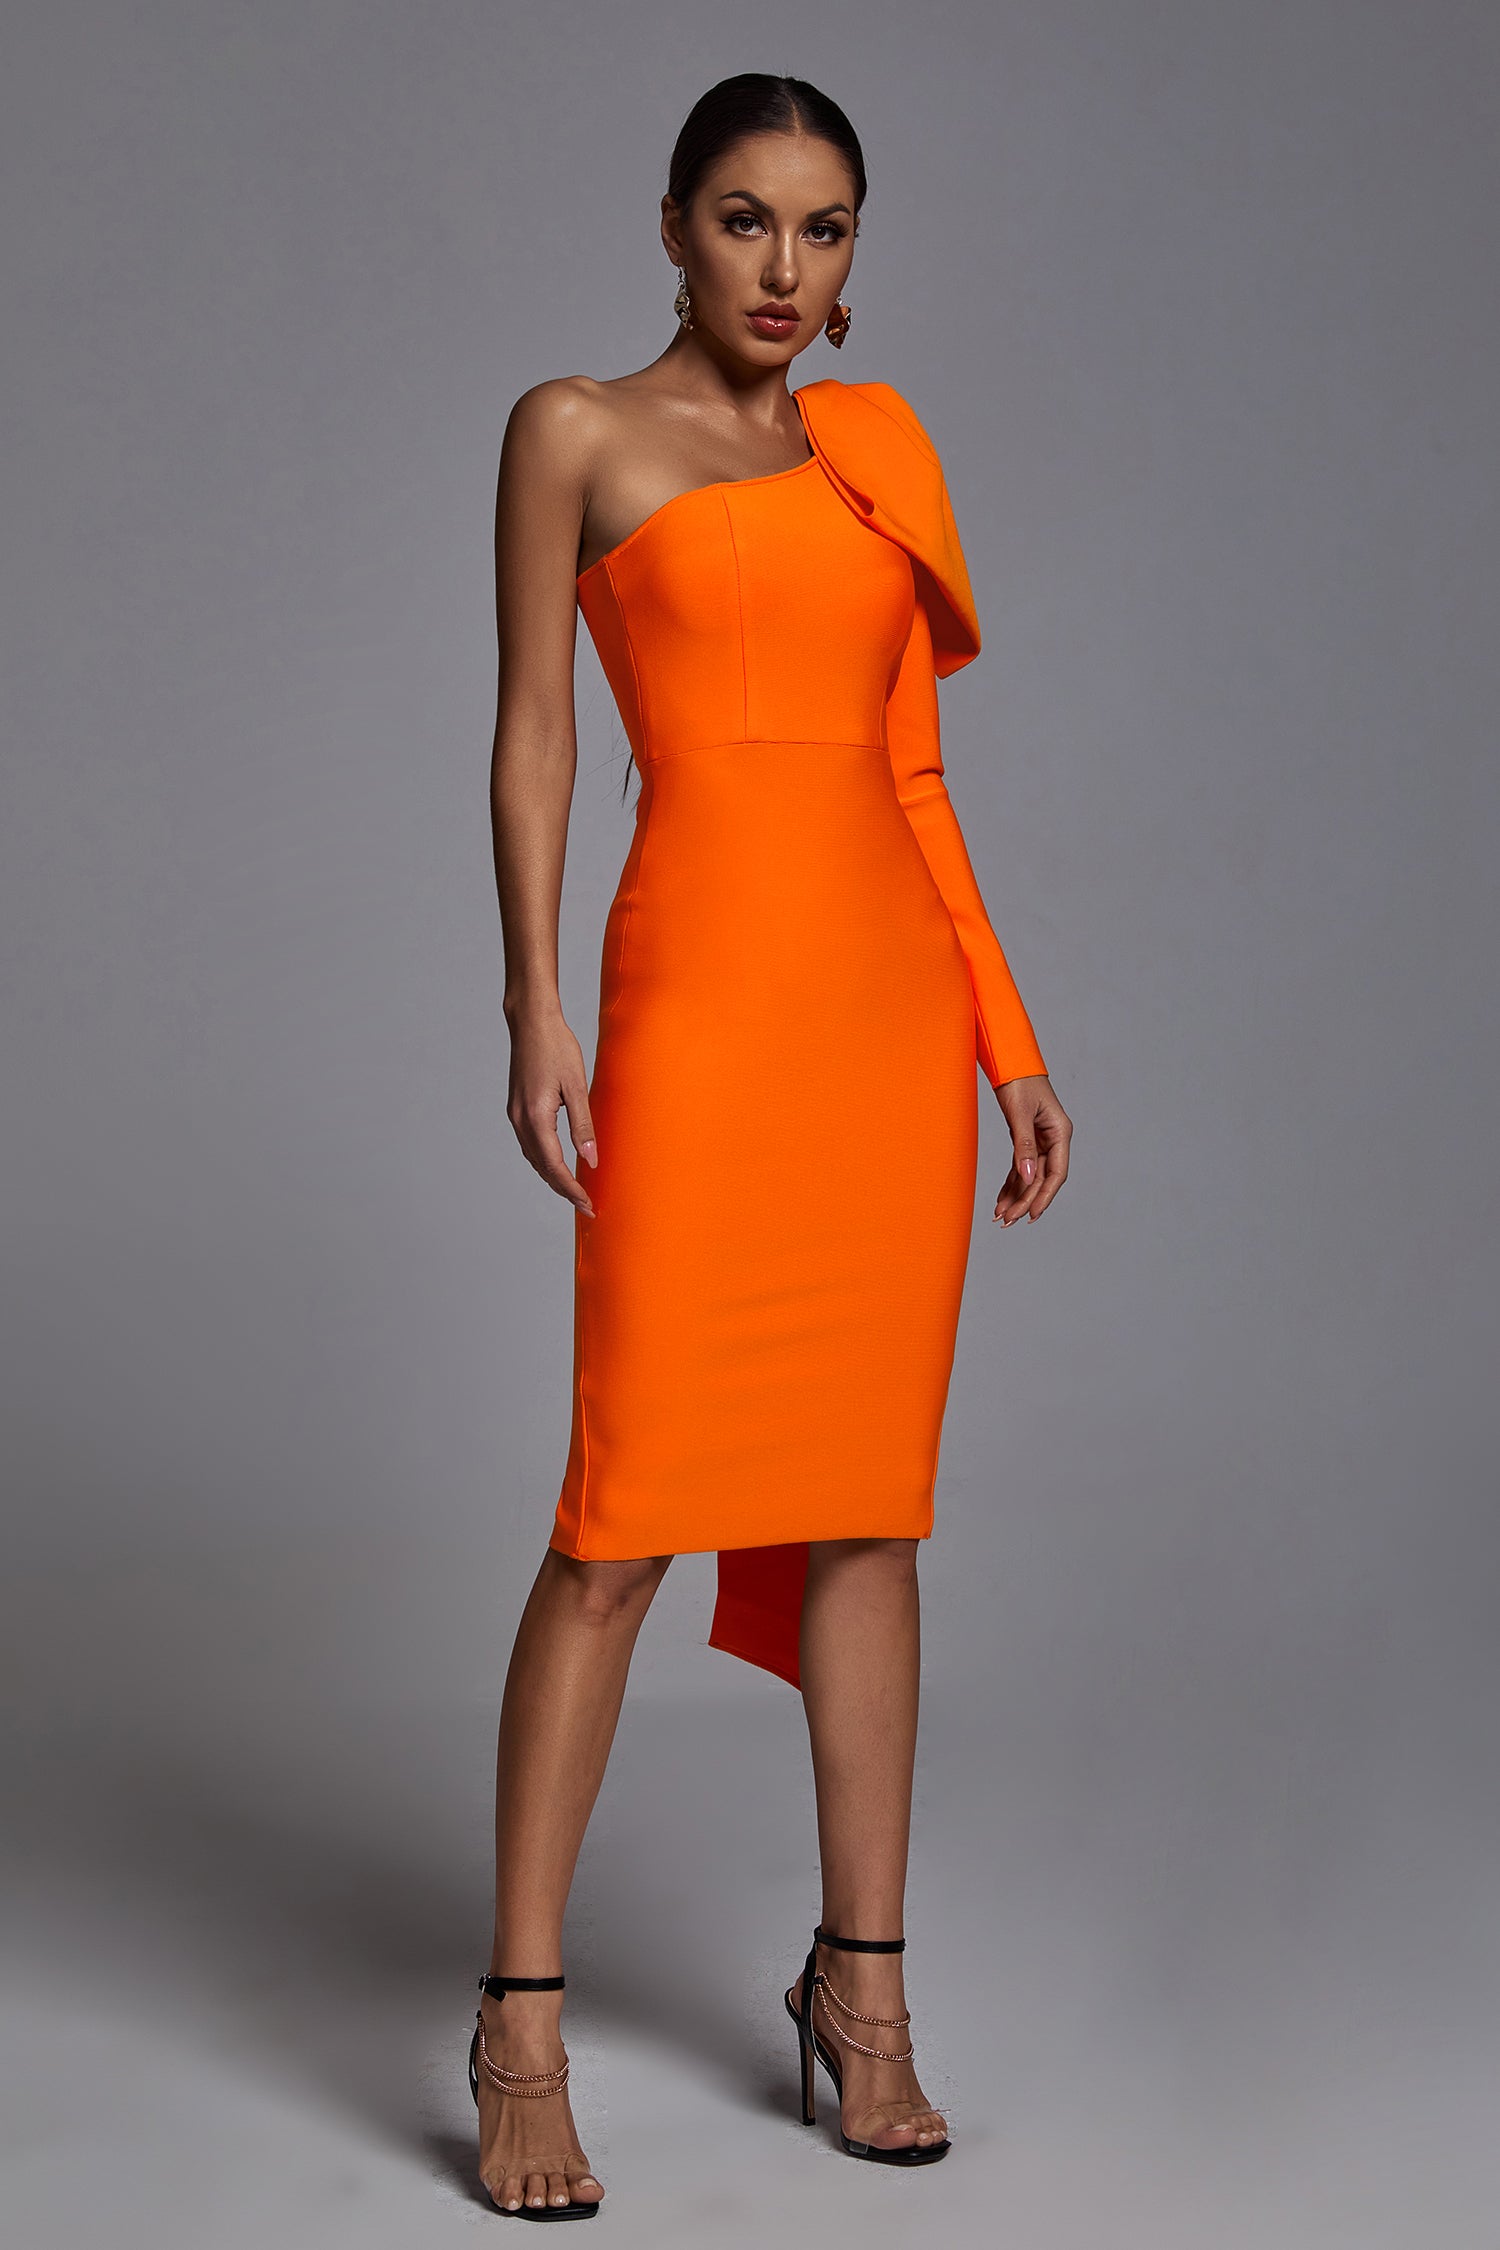 Abbey Orange One Shoulder Bandage Dress